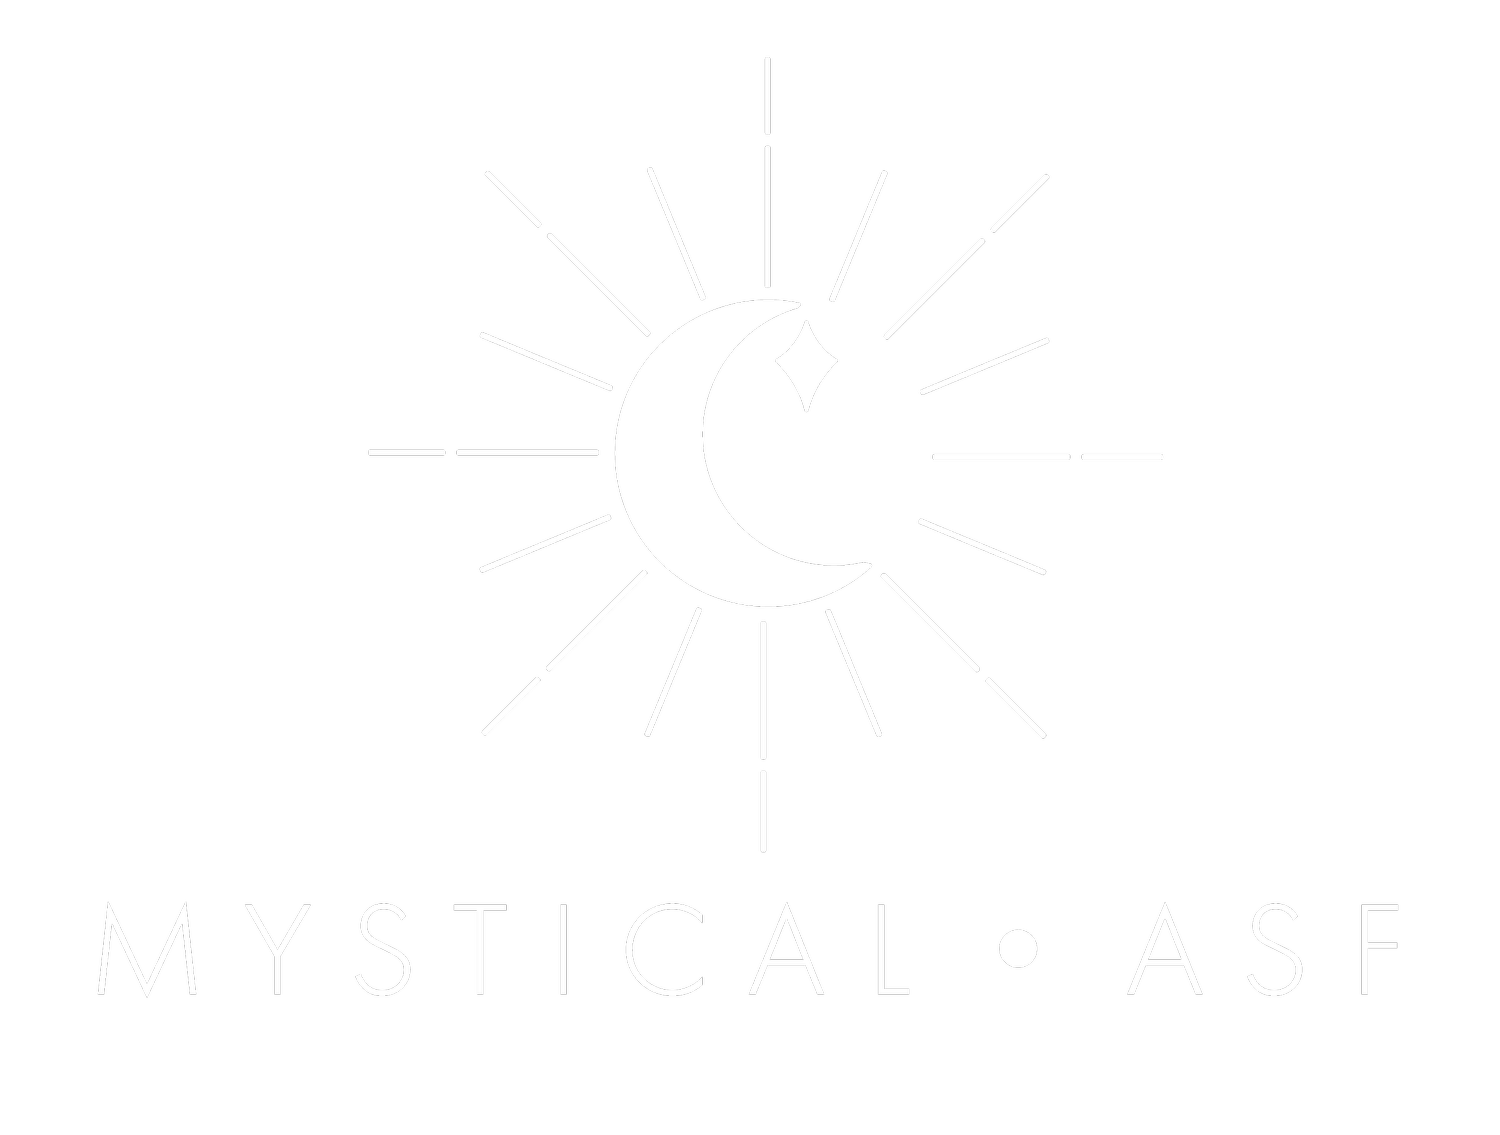 Mystical asf